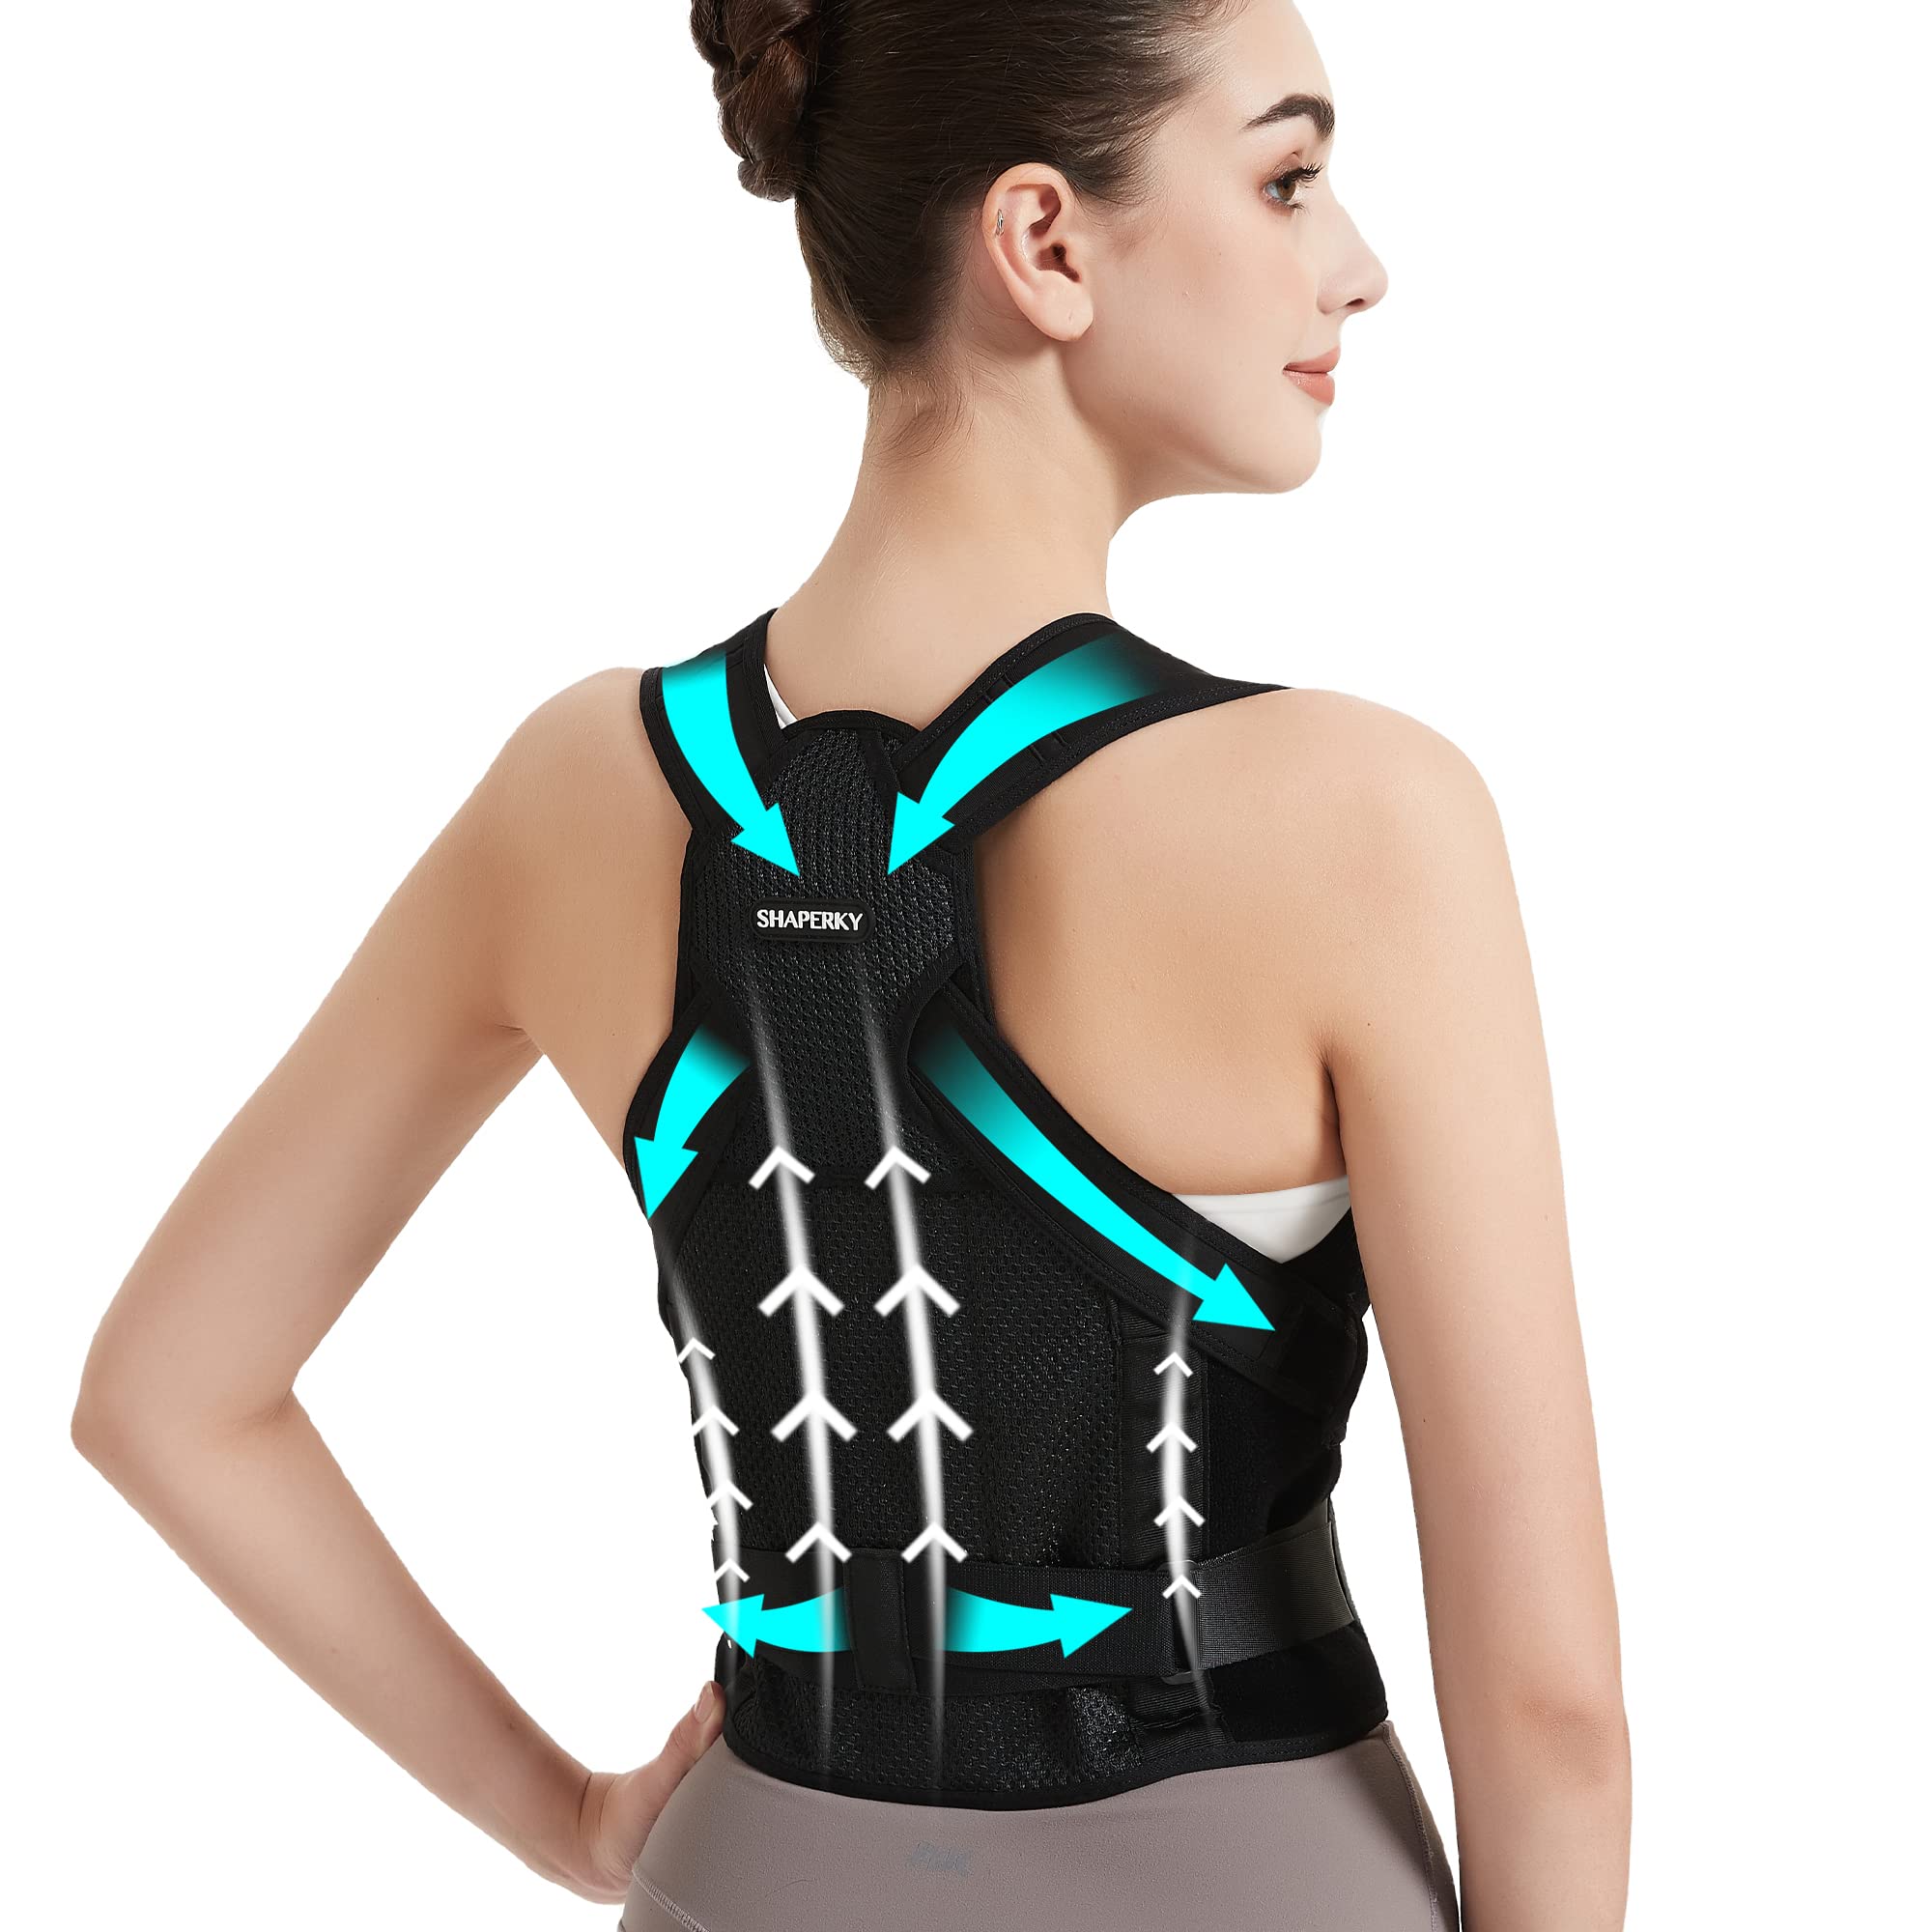 LONG LIFE Posture Corrector, Shoulder Back Support Belt for Women